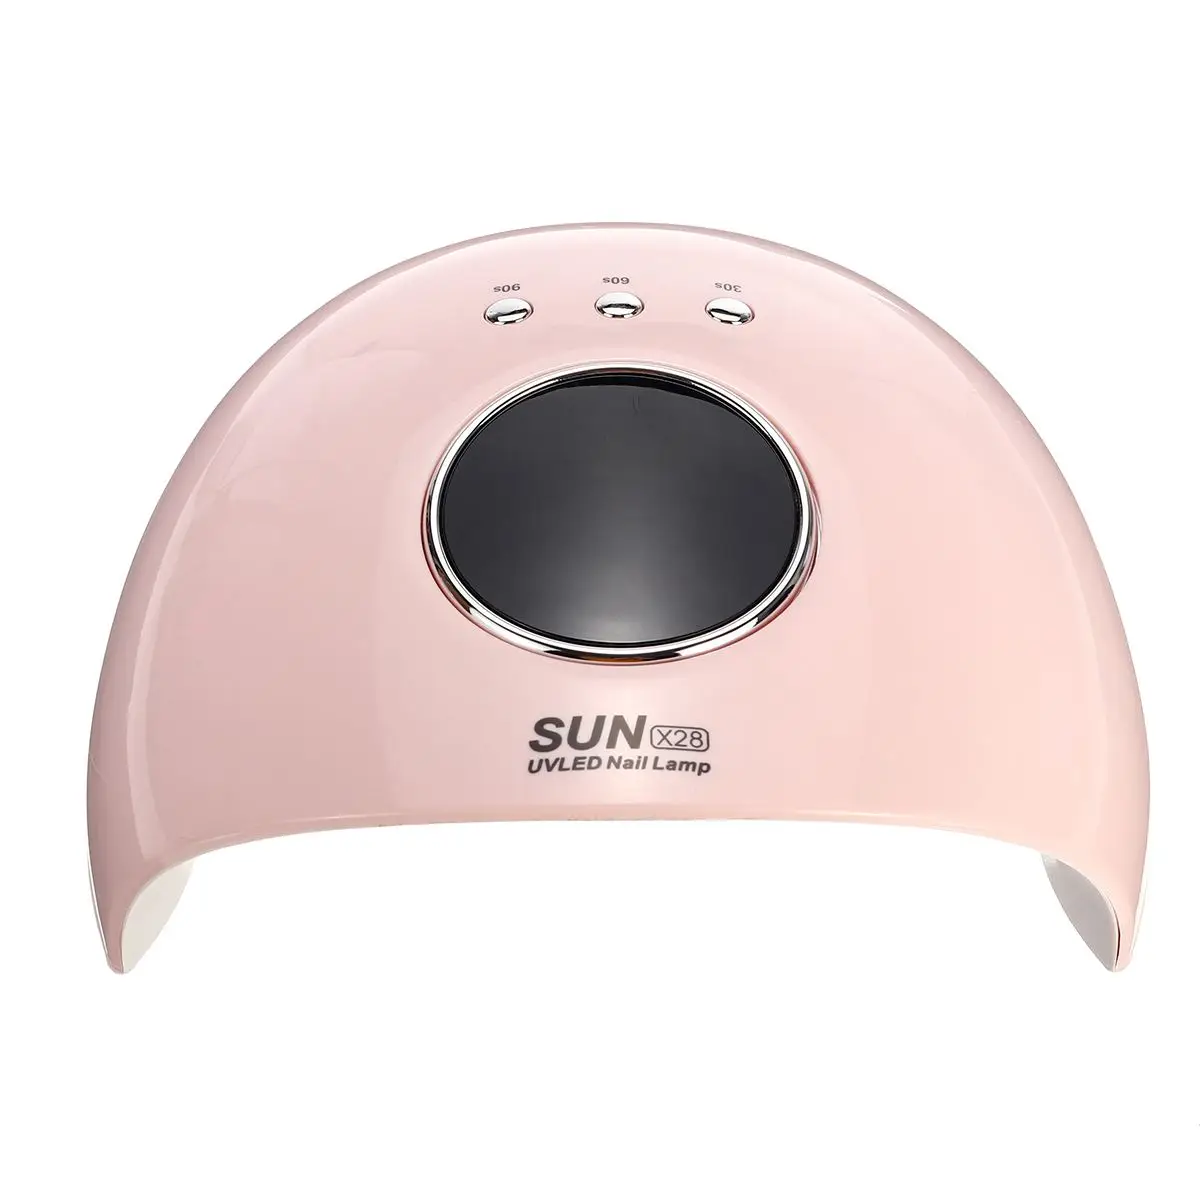 SUN X28 120 Вт УФ 12 Светодиодный Сушилка для ногтей лак лампа для клея Гель-лак сушильная лампа синхронизации фототерапия машина инструменты для ногтей - Цвет: Розовый